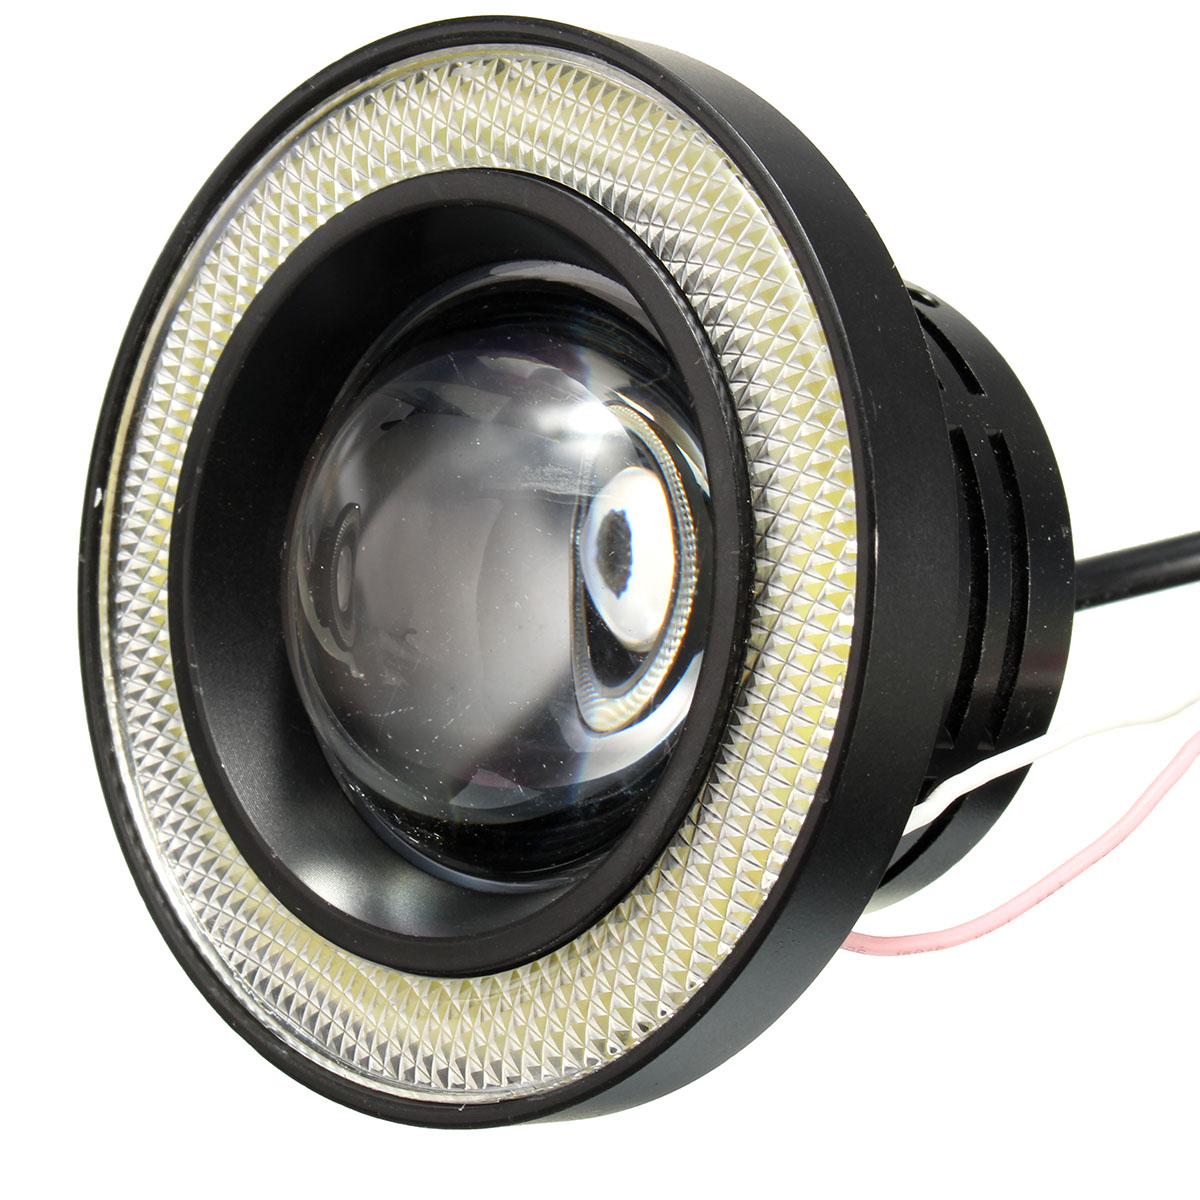 White LED Angel Eyes Ring Light Bulbs Fog Lamp Kit 30W 3200LM Waterproof